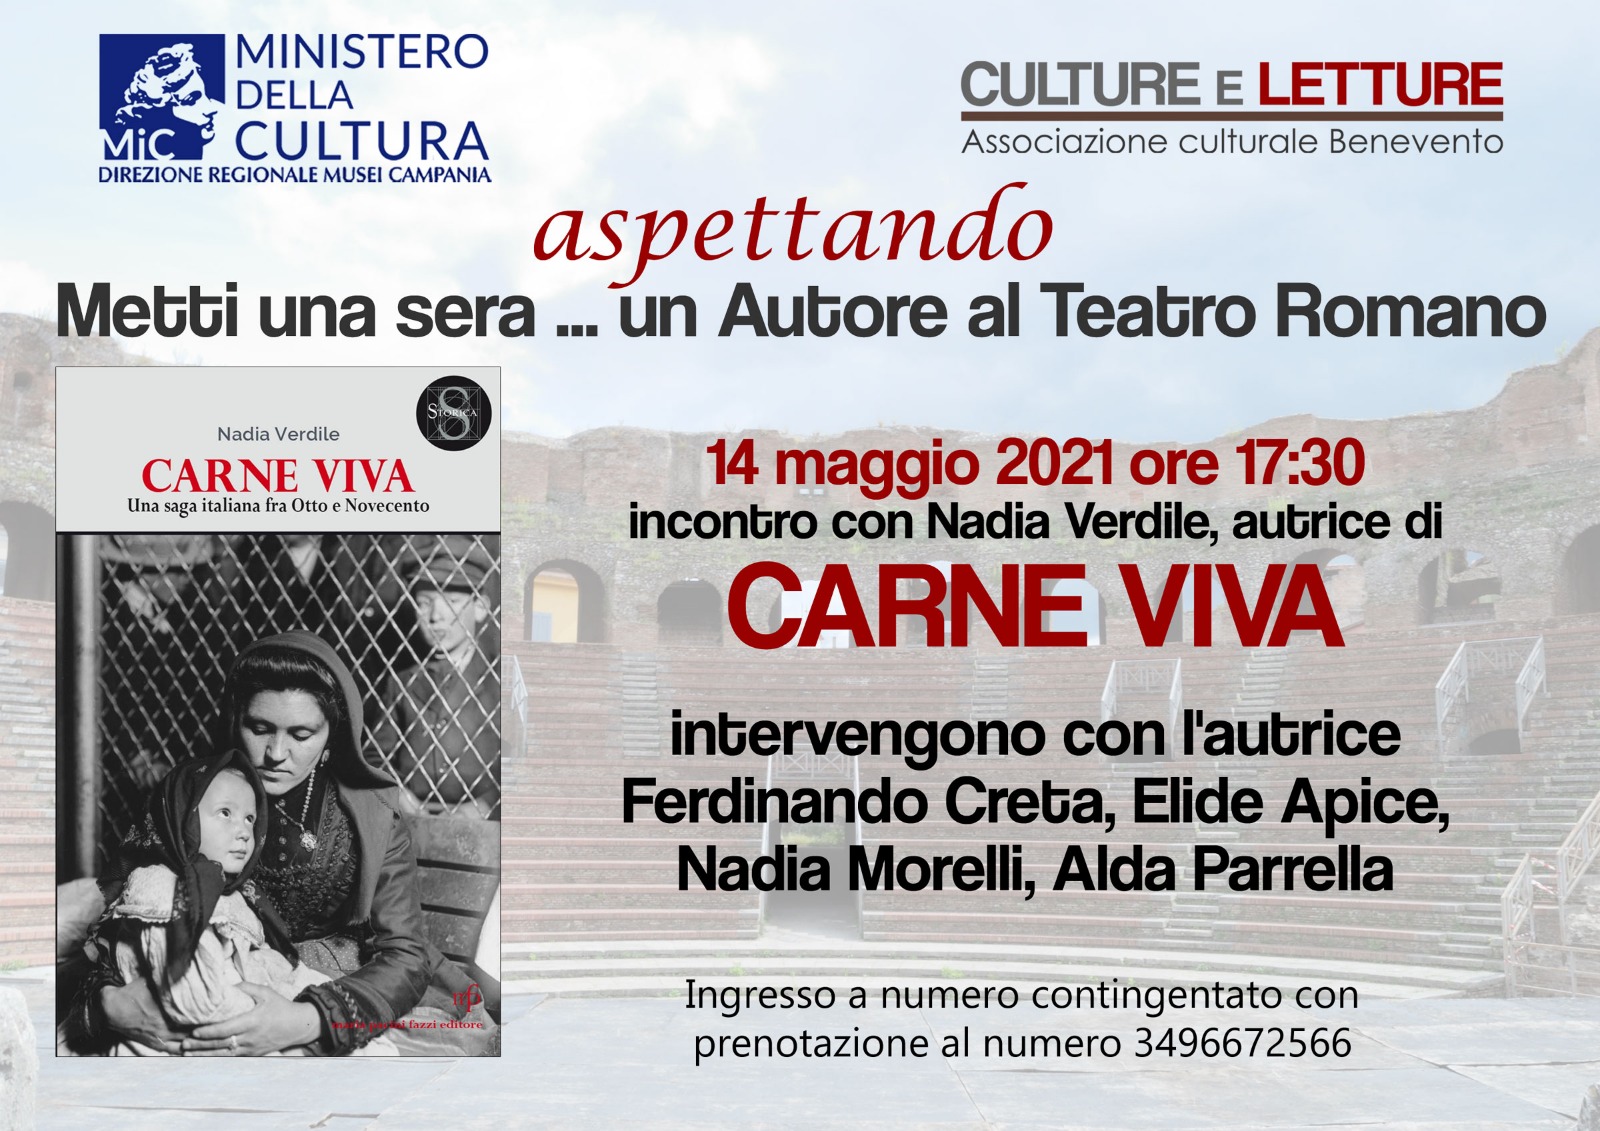 “Metti una sera un autore al Teatro Romano”, incontro con Nadia Verdile